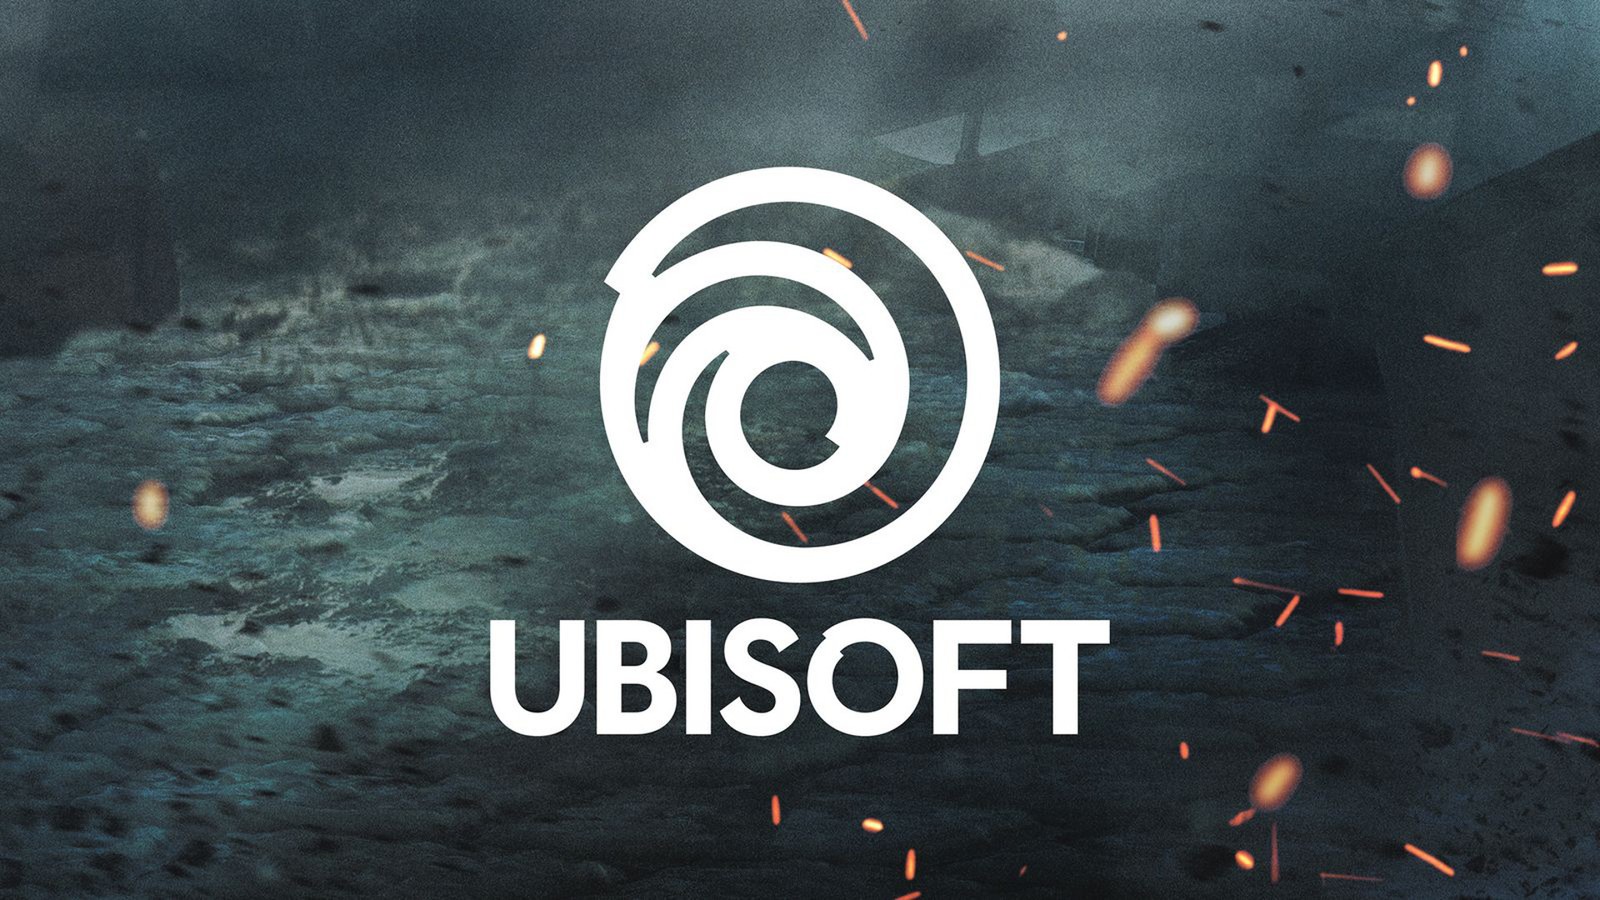 Ubisoft E3 2018 सम्मेलन: एक स्थान पर सभी ट्रेलर